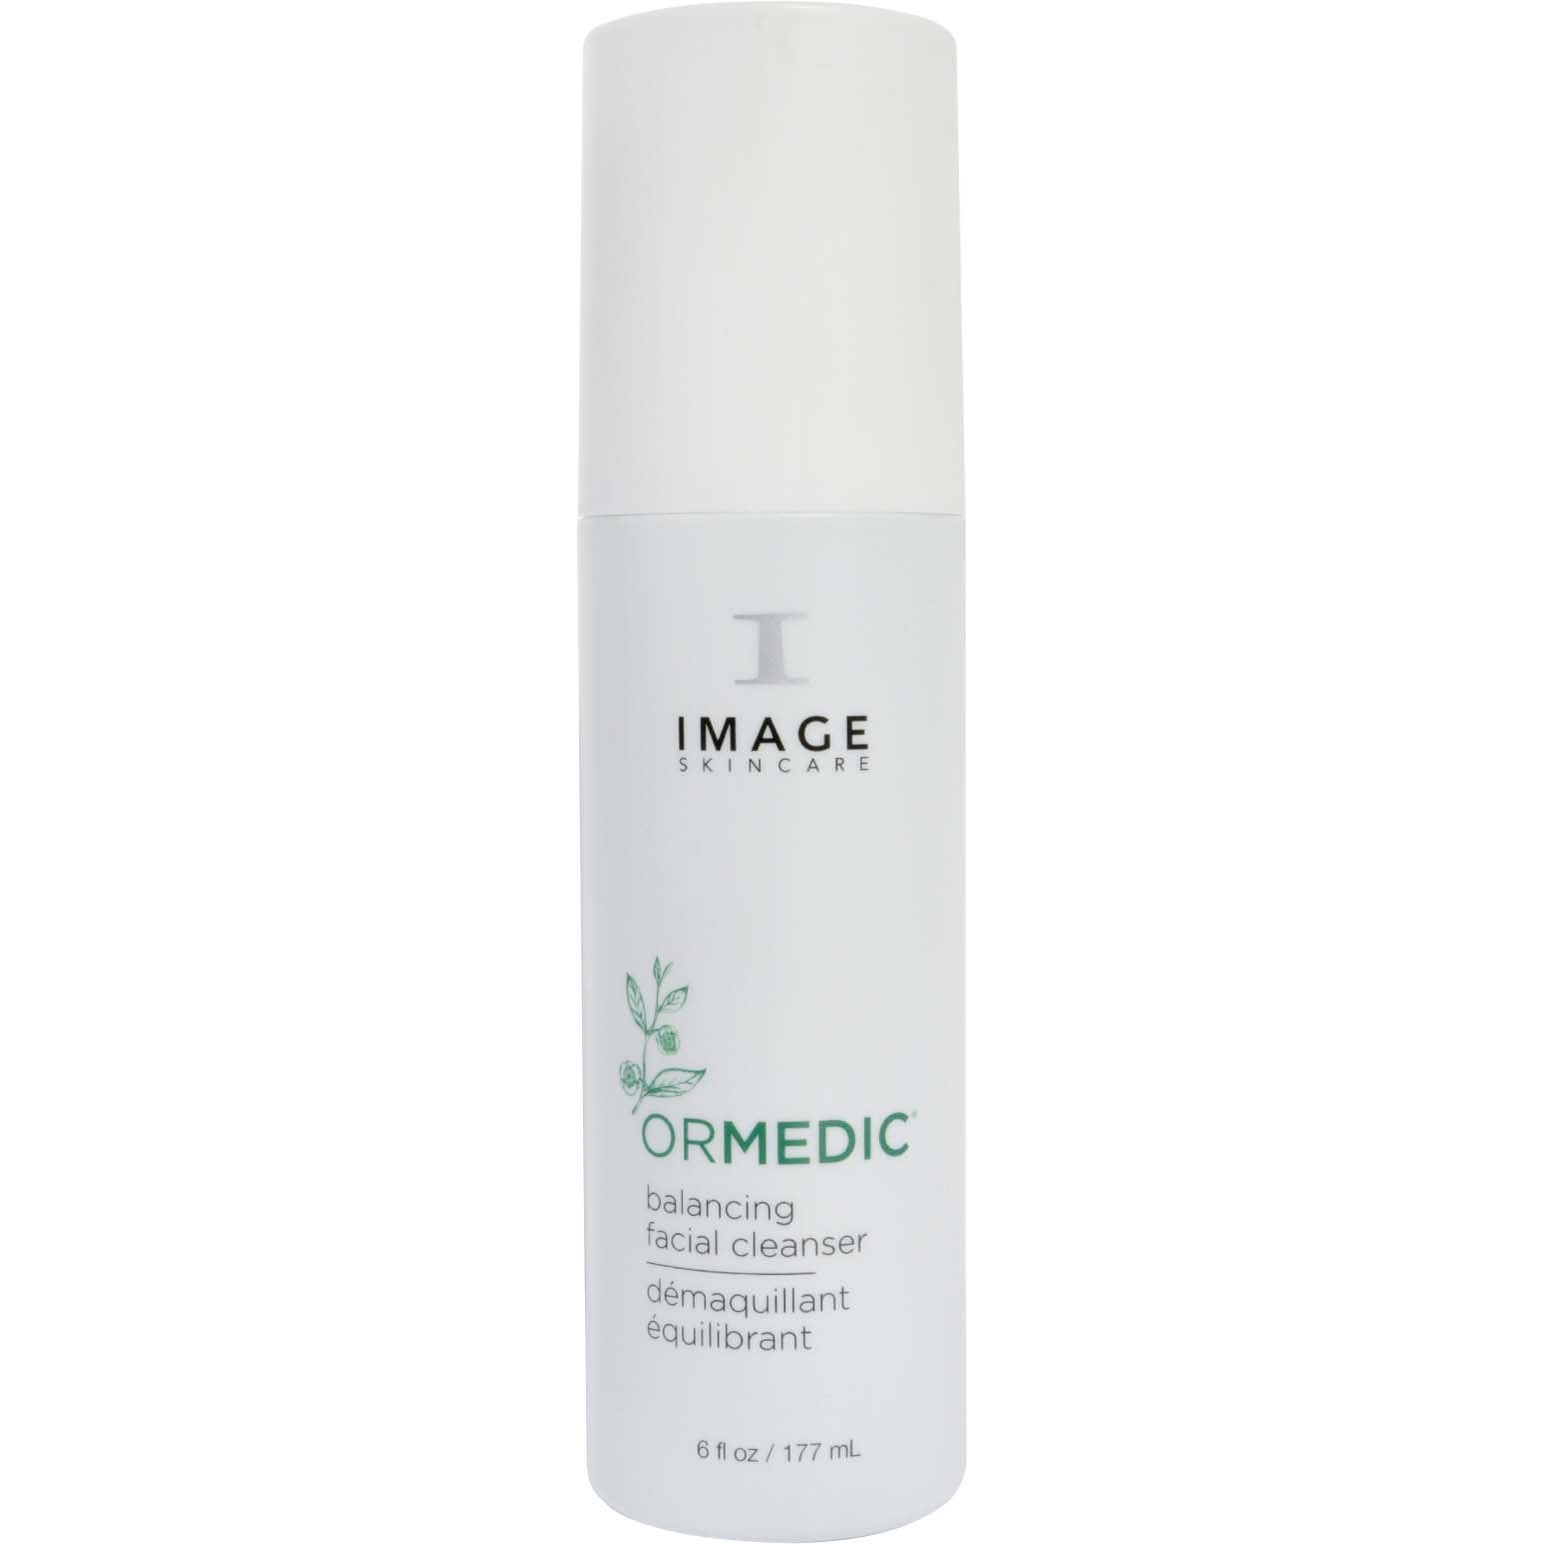 Läs mer om IMAGE Skincare Ormedic Balancing Facial Cleanser 177 ml